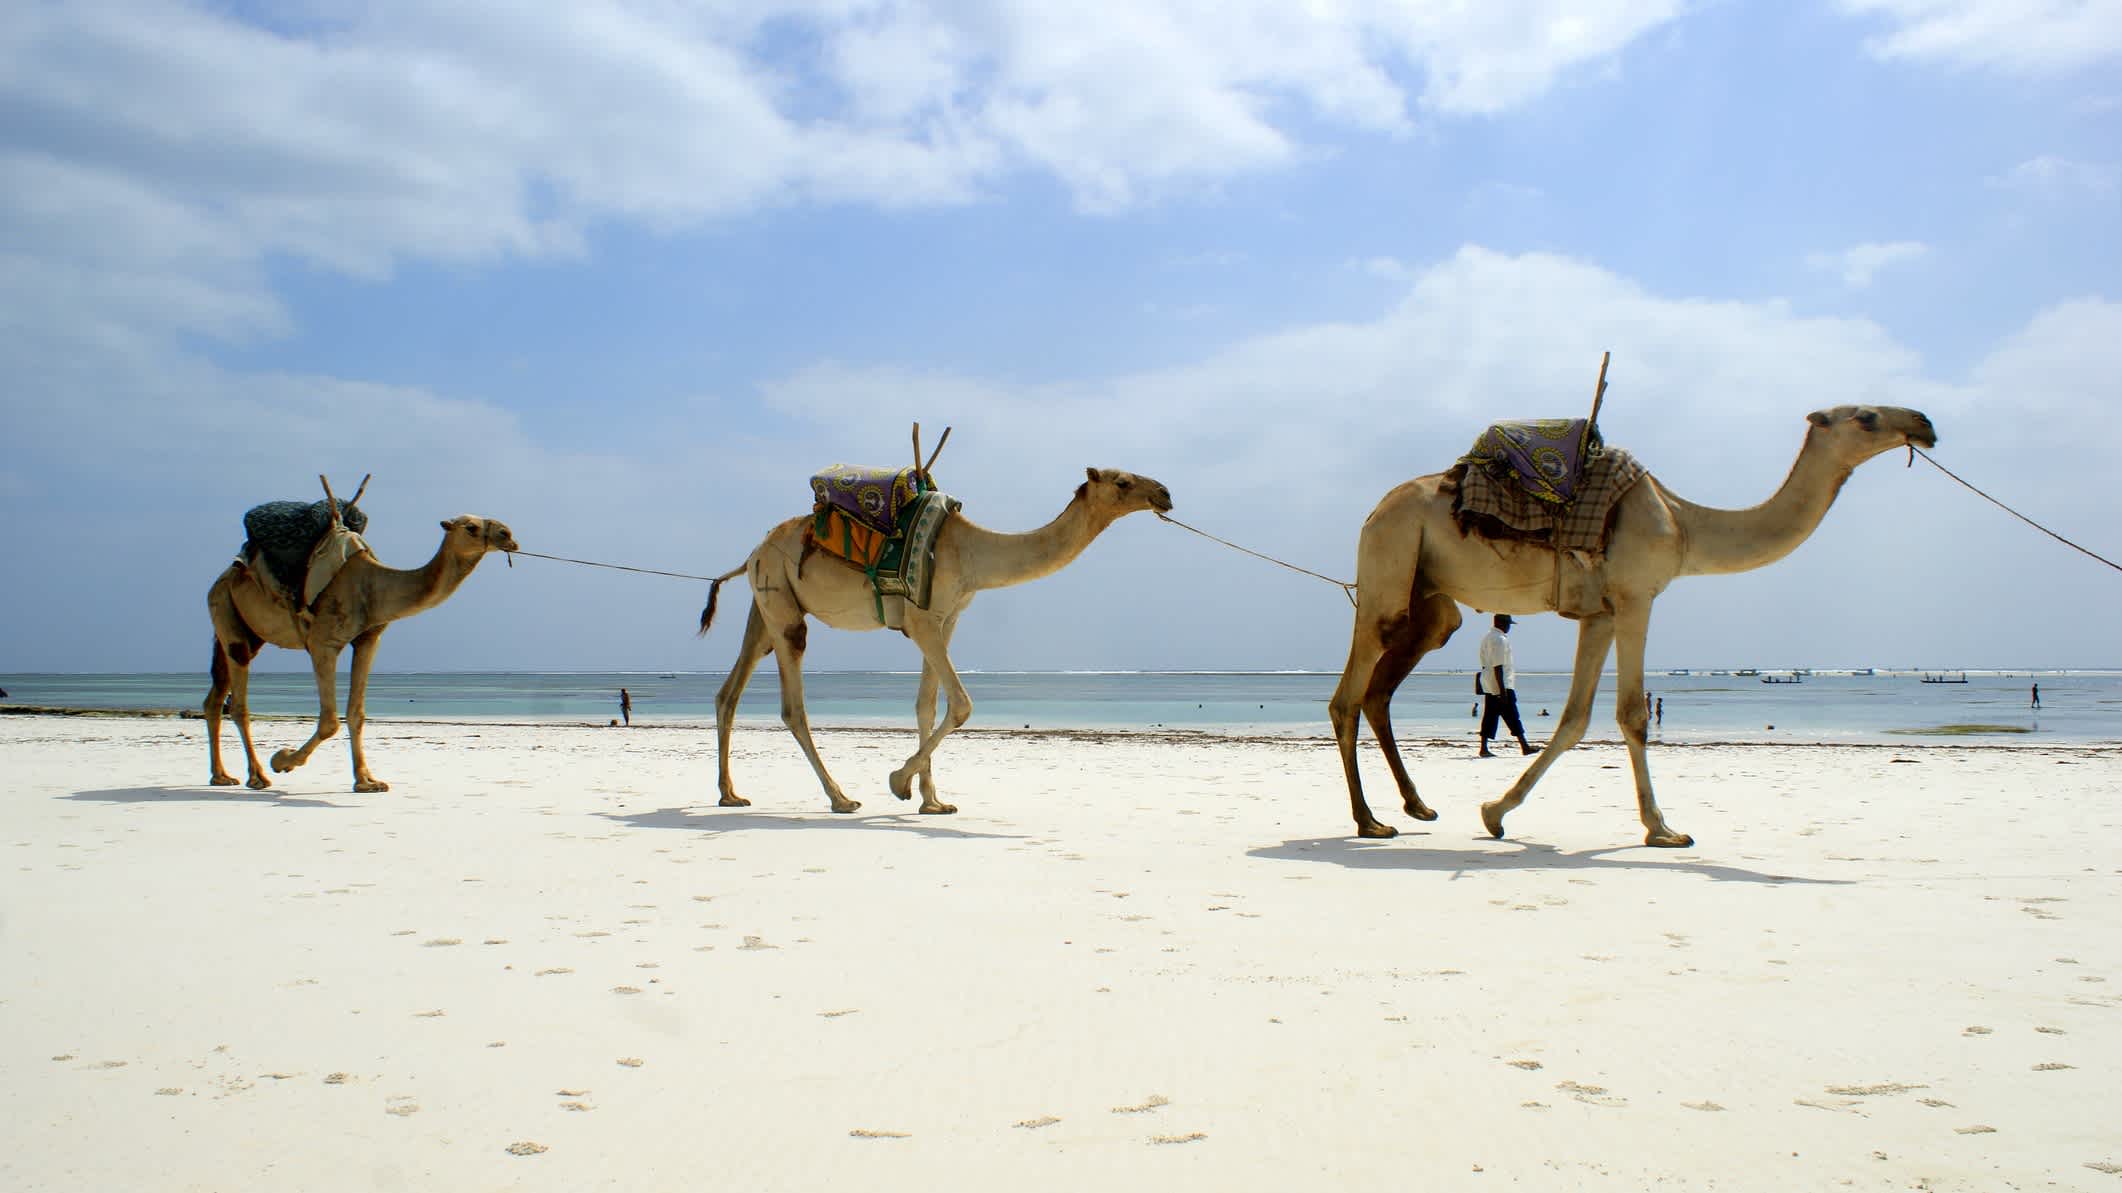 Kamele am Strand Shanzu Beach in Kenia bei Sonnenschein.